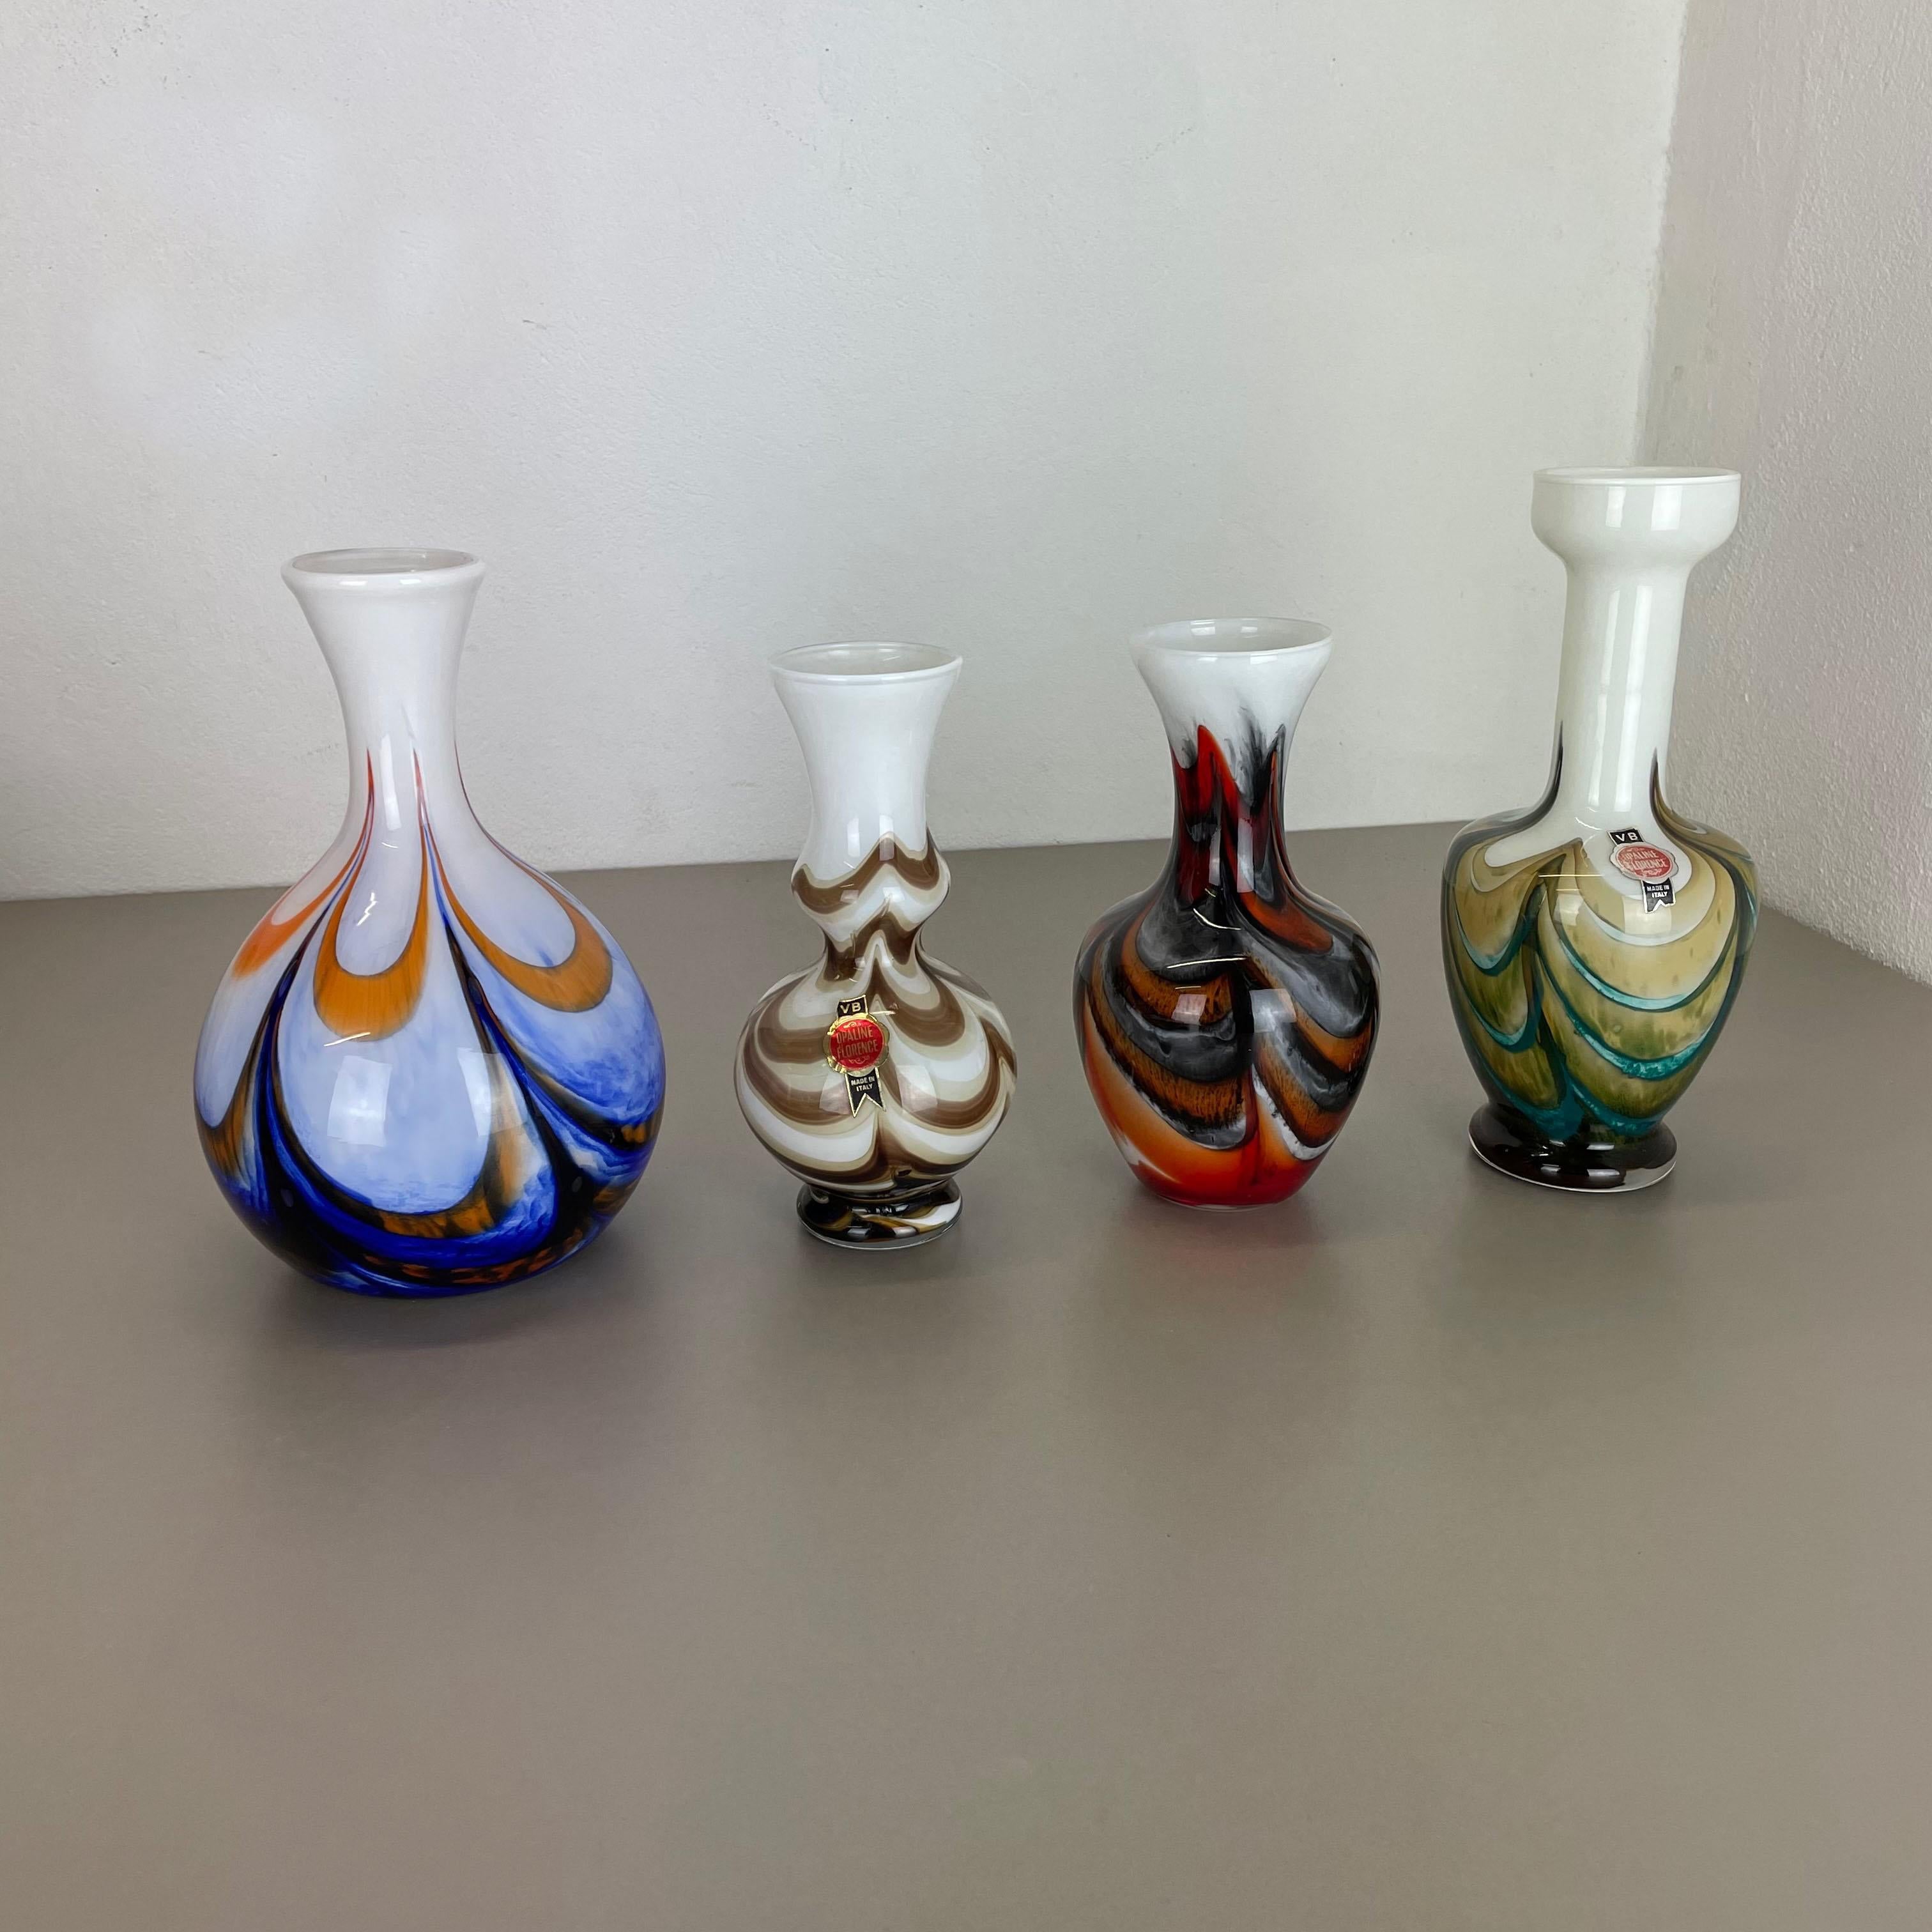 Artikel: 

Pop Art Vase 4er Set


Produzent:

Opalin Florenz



Entwurf:

Carlo Moretti



Jahrzehnt:

1970s.

Originales mundgeblasenes Vasen-Set aus den 1970er Jahren, hergestellt in Italien von Opaline Florenz. Hergestellt